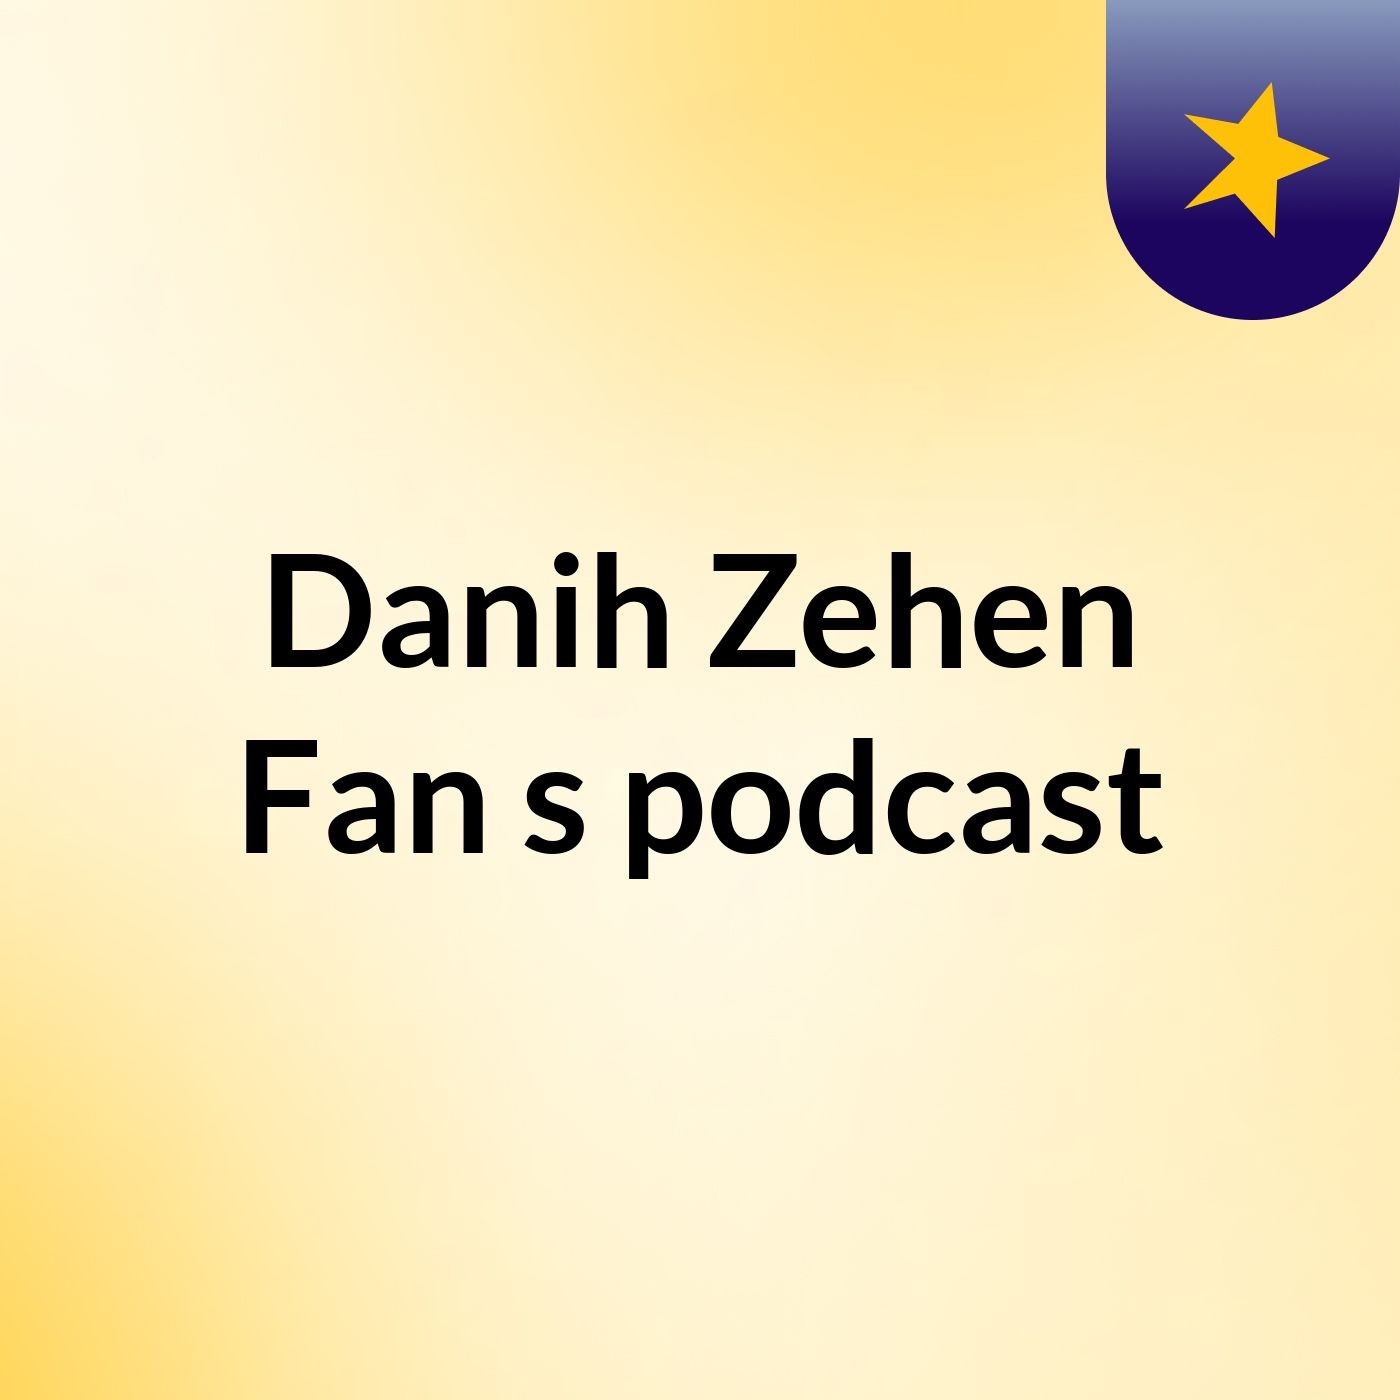 Episode 10 - Danih Zehen Fan's podcast